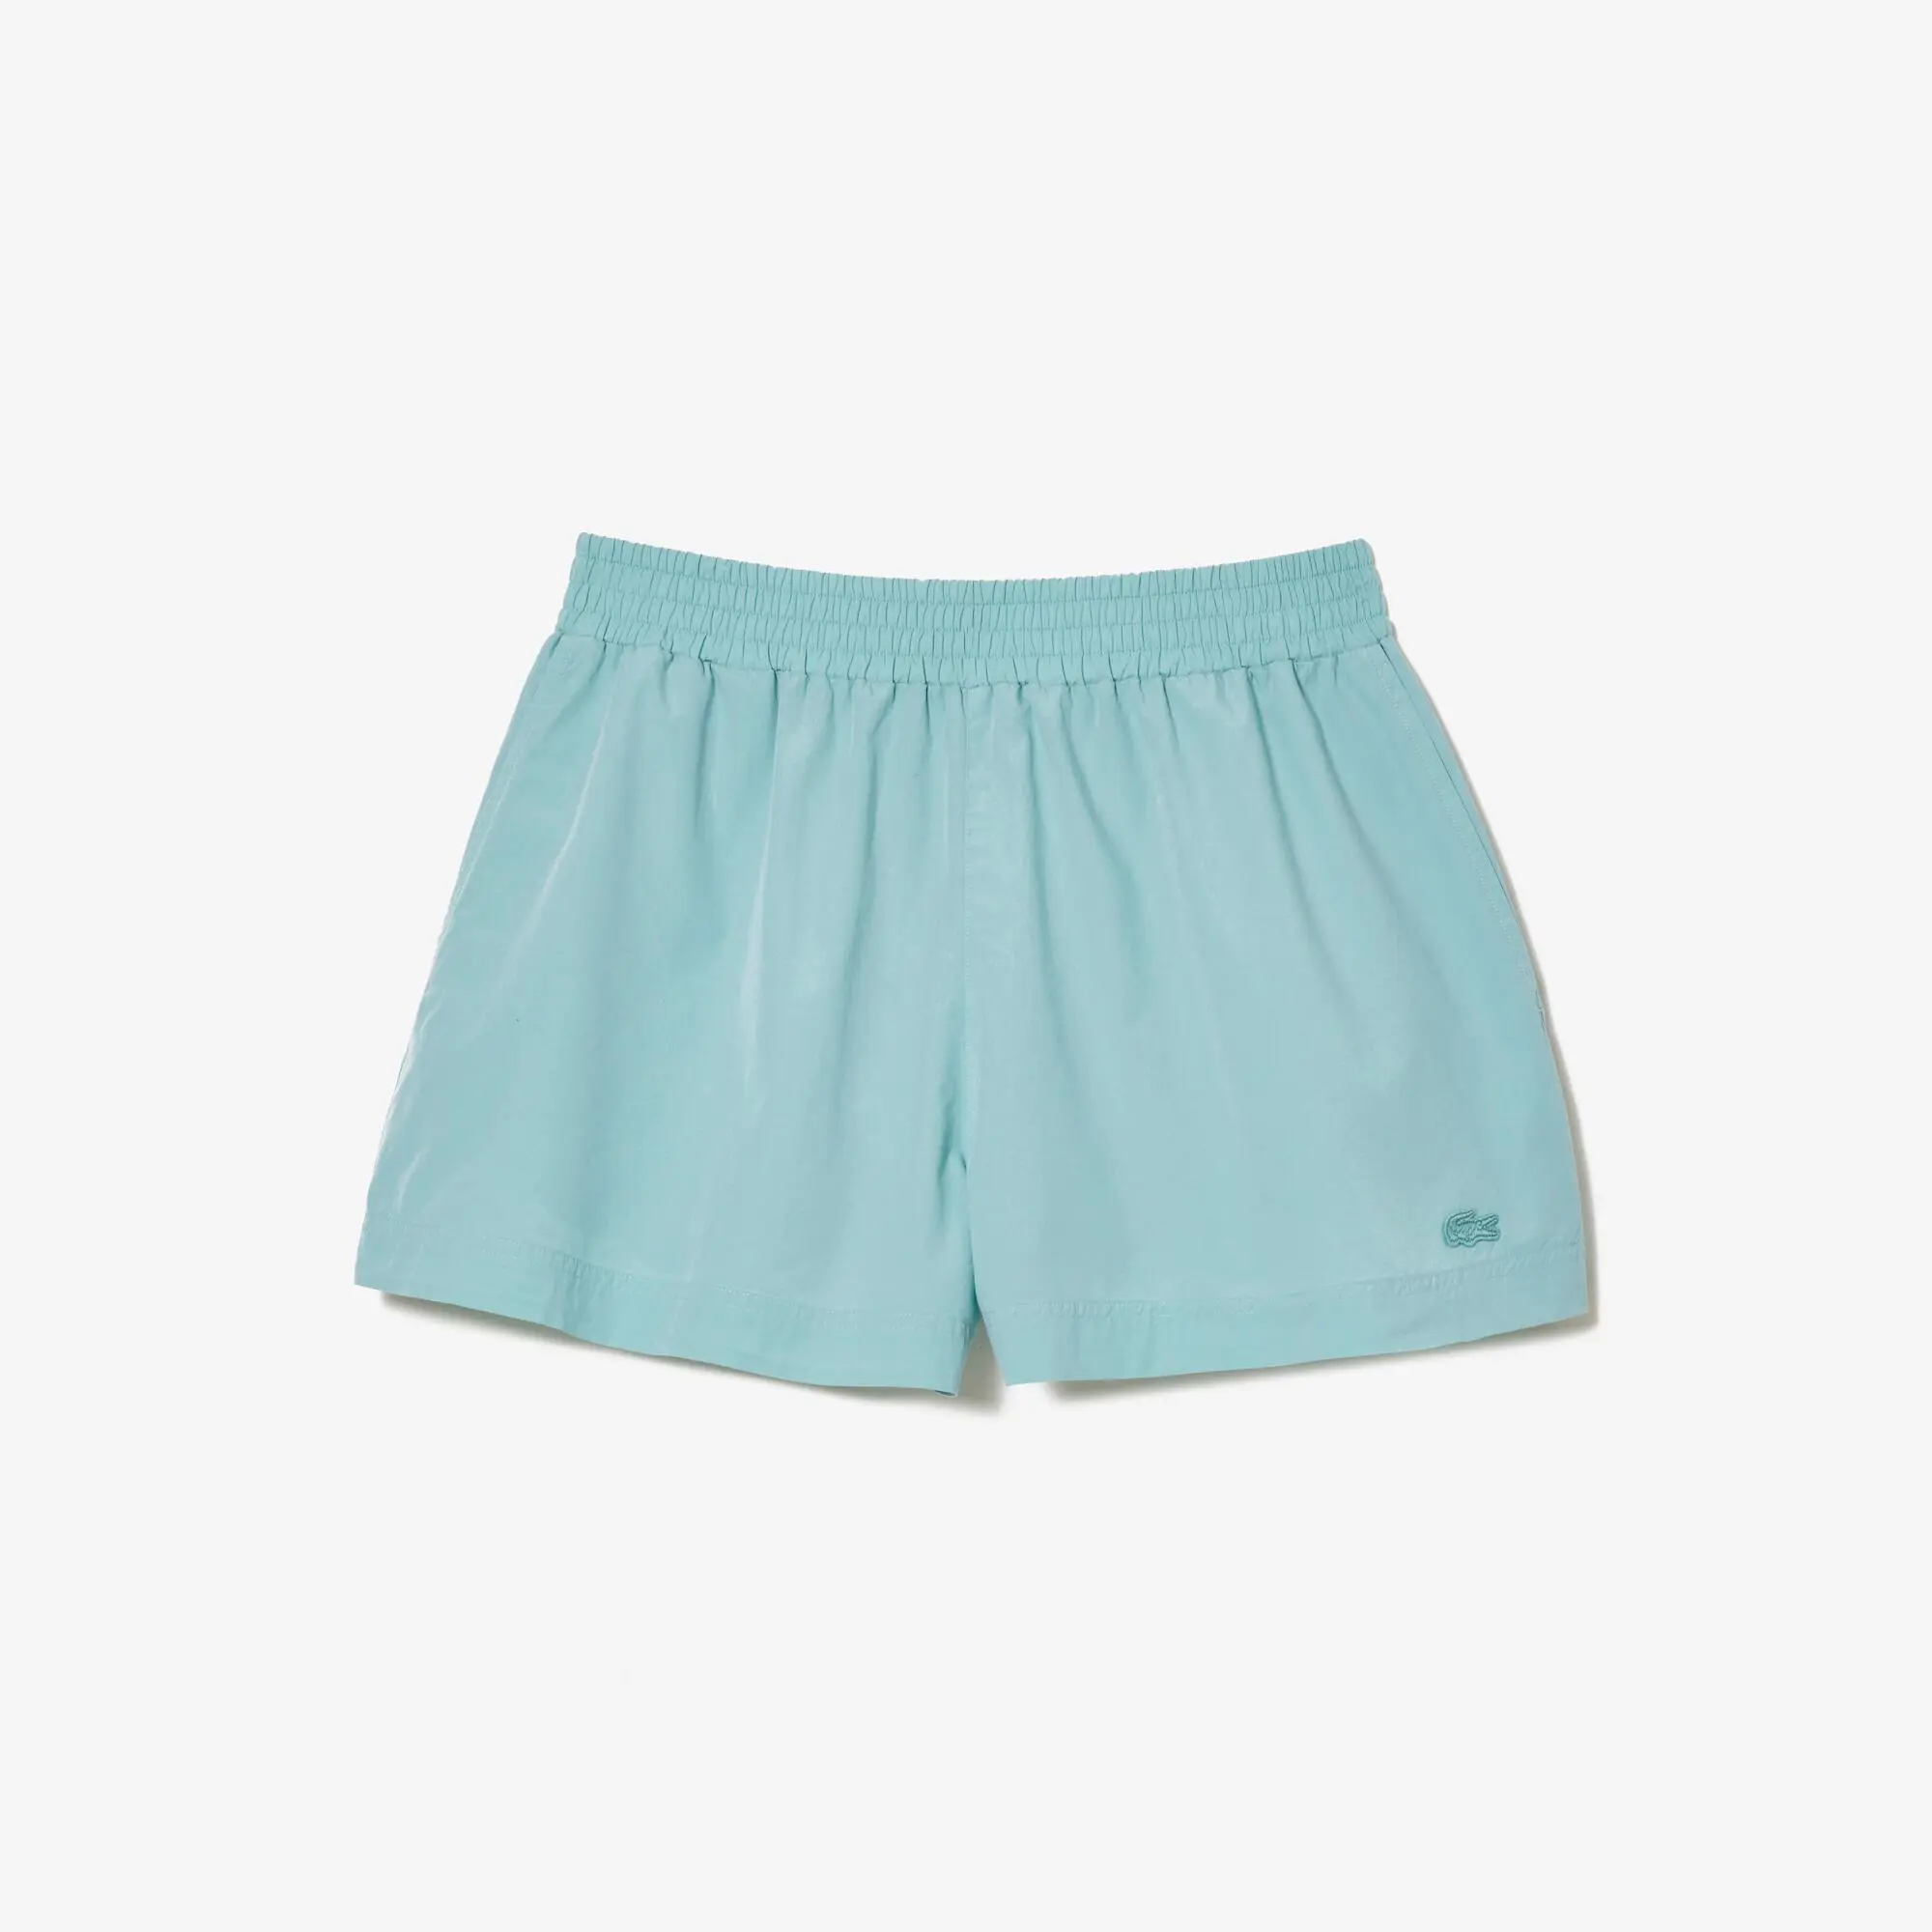 Lacoste Women’s Lacoste Cotton Poplin Shorts. 2